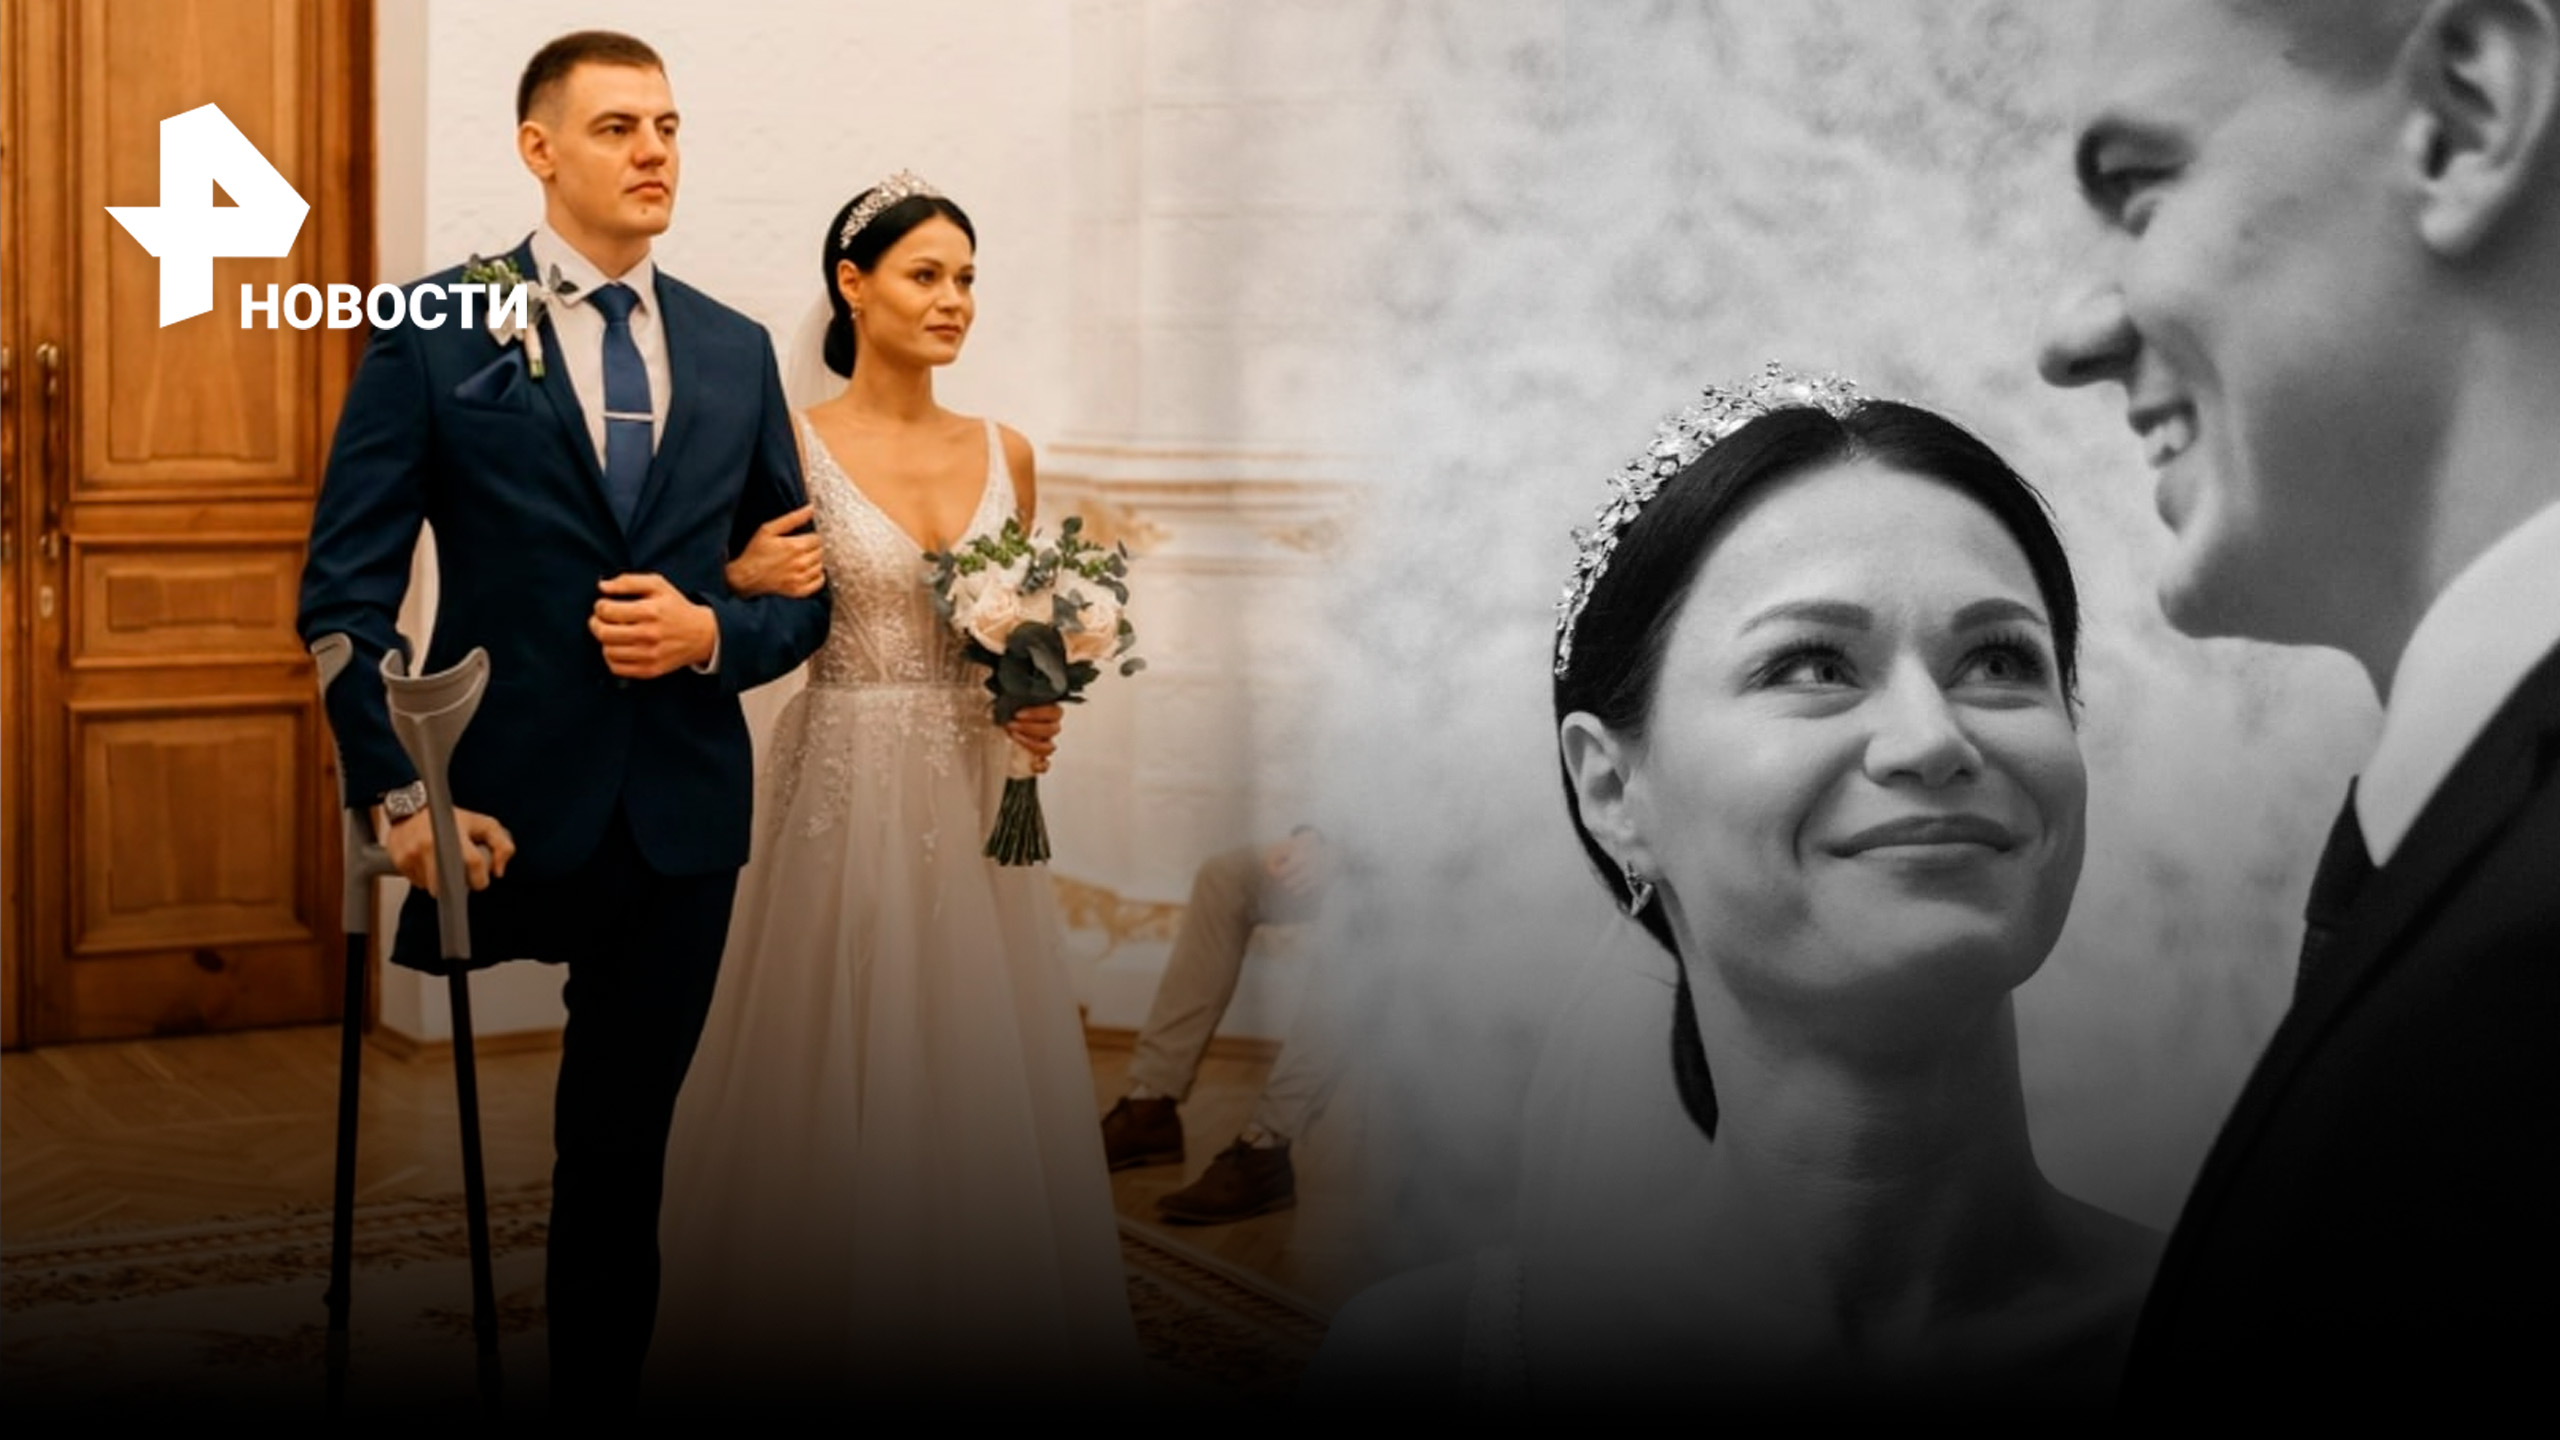 Писательница вышла замуж за парня из Донецка, потерявшего ногу в бою / РЕН Новости